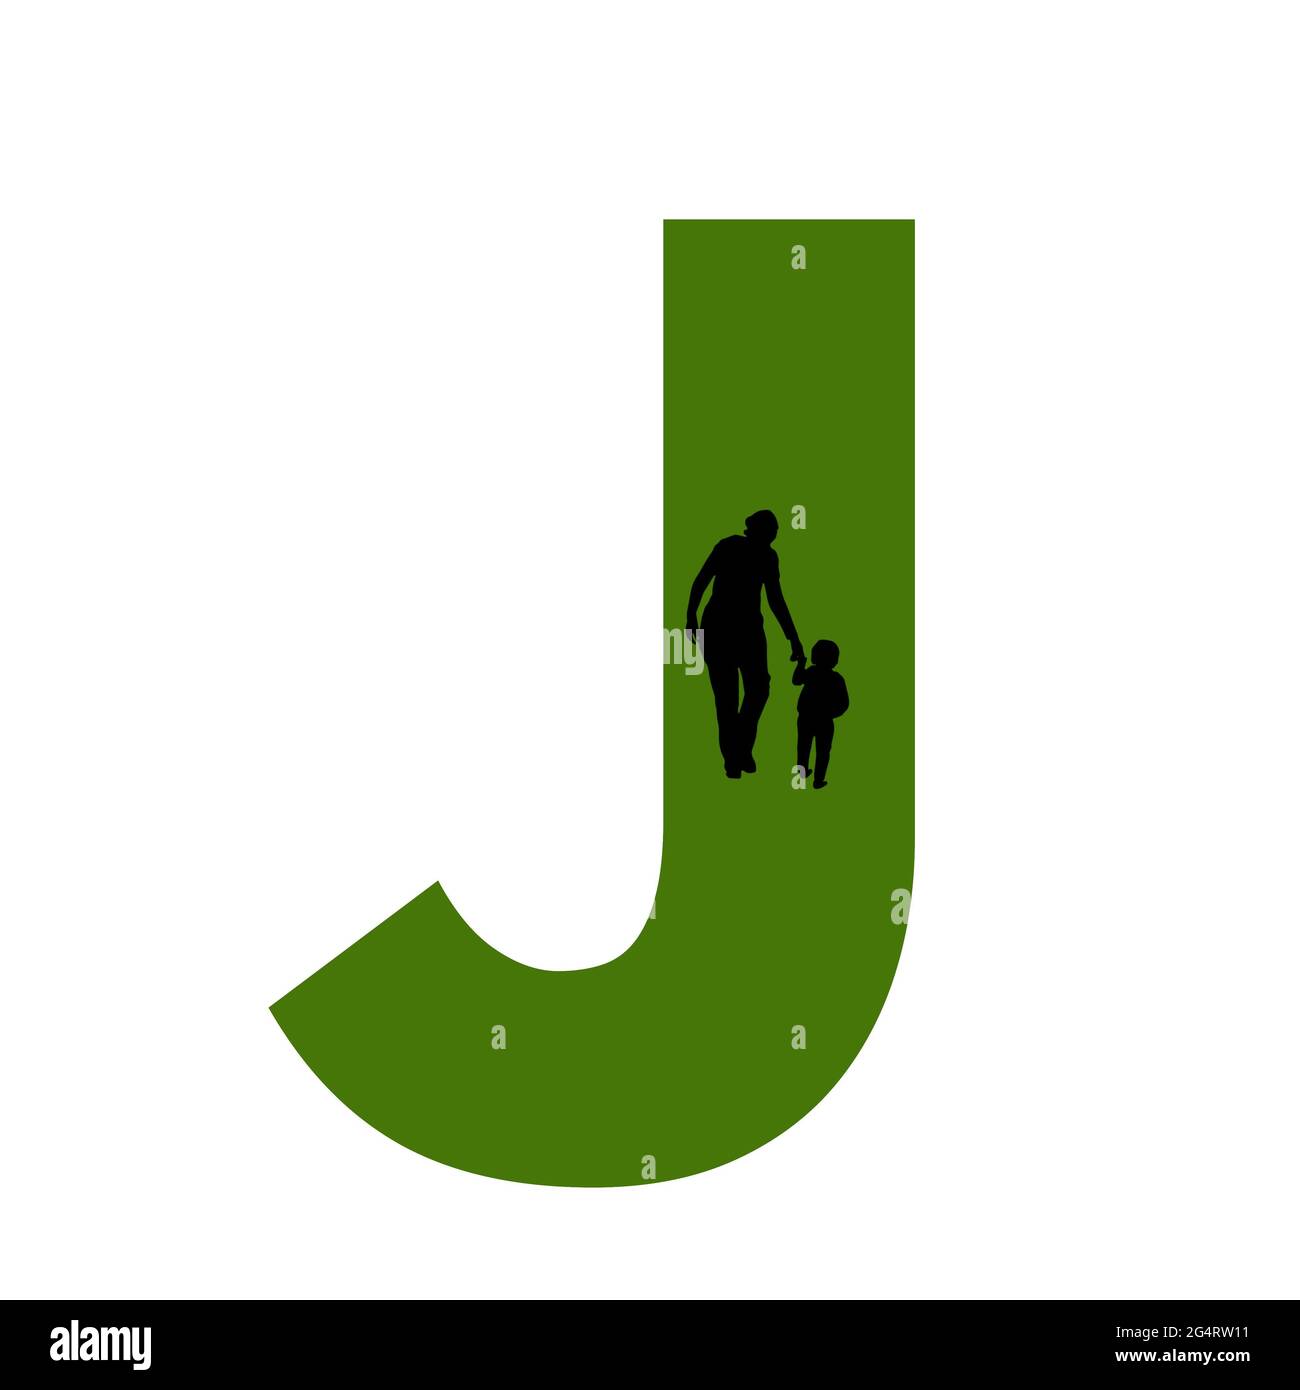 Lettre J de l'alphabet avec silhouette d'une mère et d'un enfant marchant, en vert et noir Banque D'Images